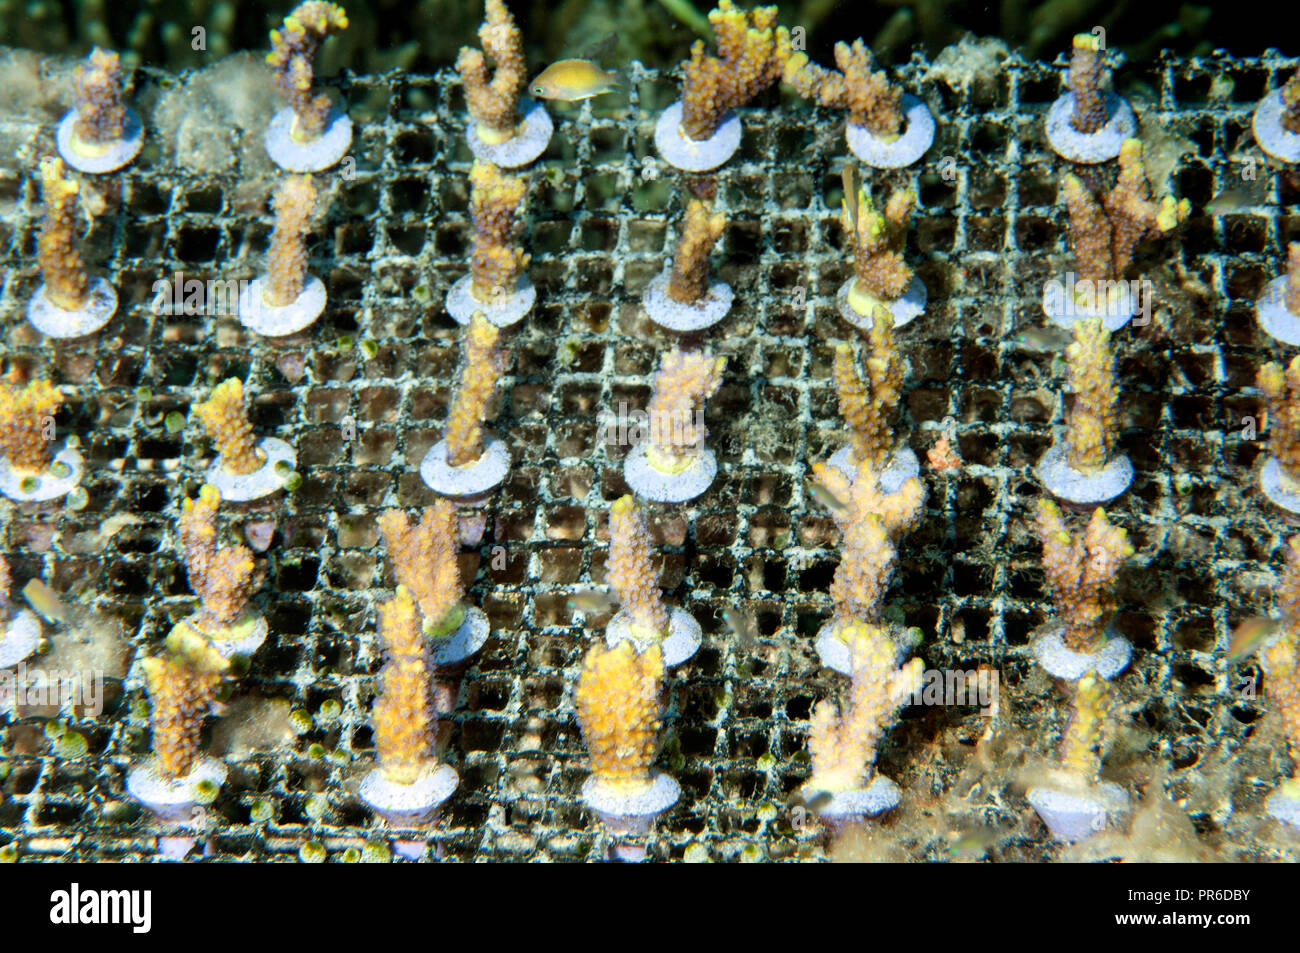 Underwater Coral Farm, Pohnpei, Föderierte Staaten von Mikronesien Stockfoto